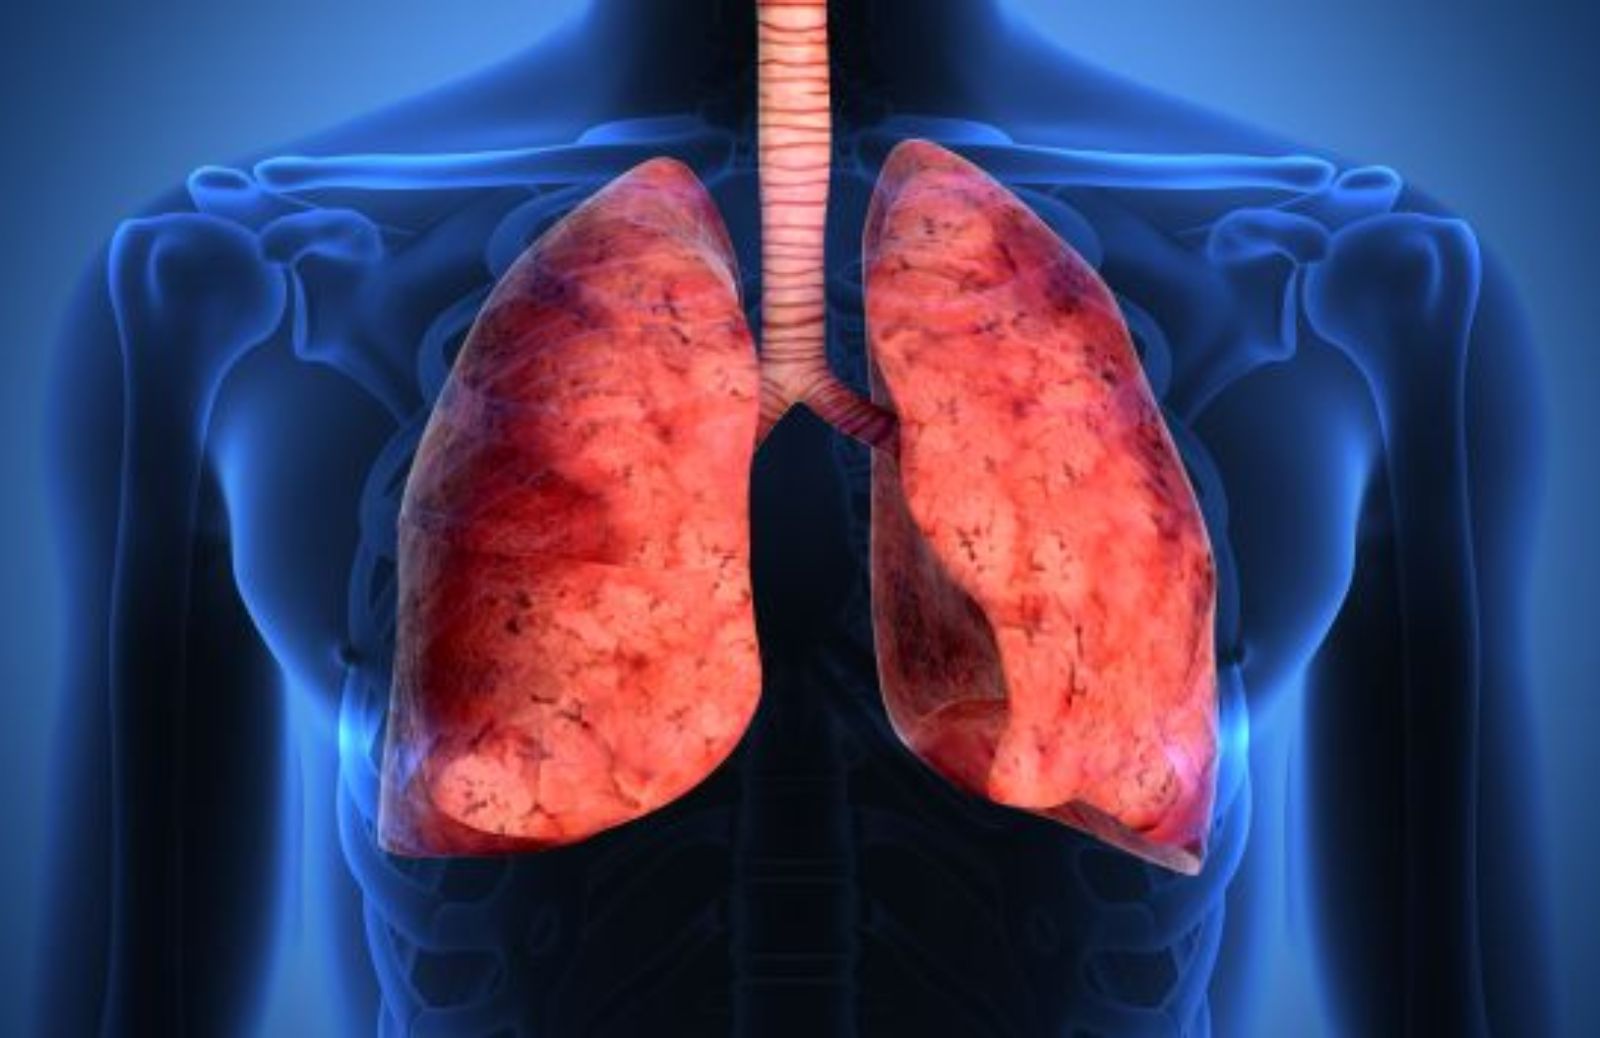 Tumore al polmone e nuove speranze: farmaci biologici e immunoterapia